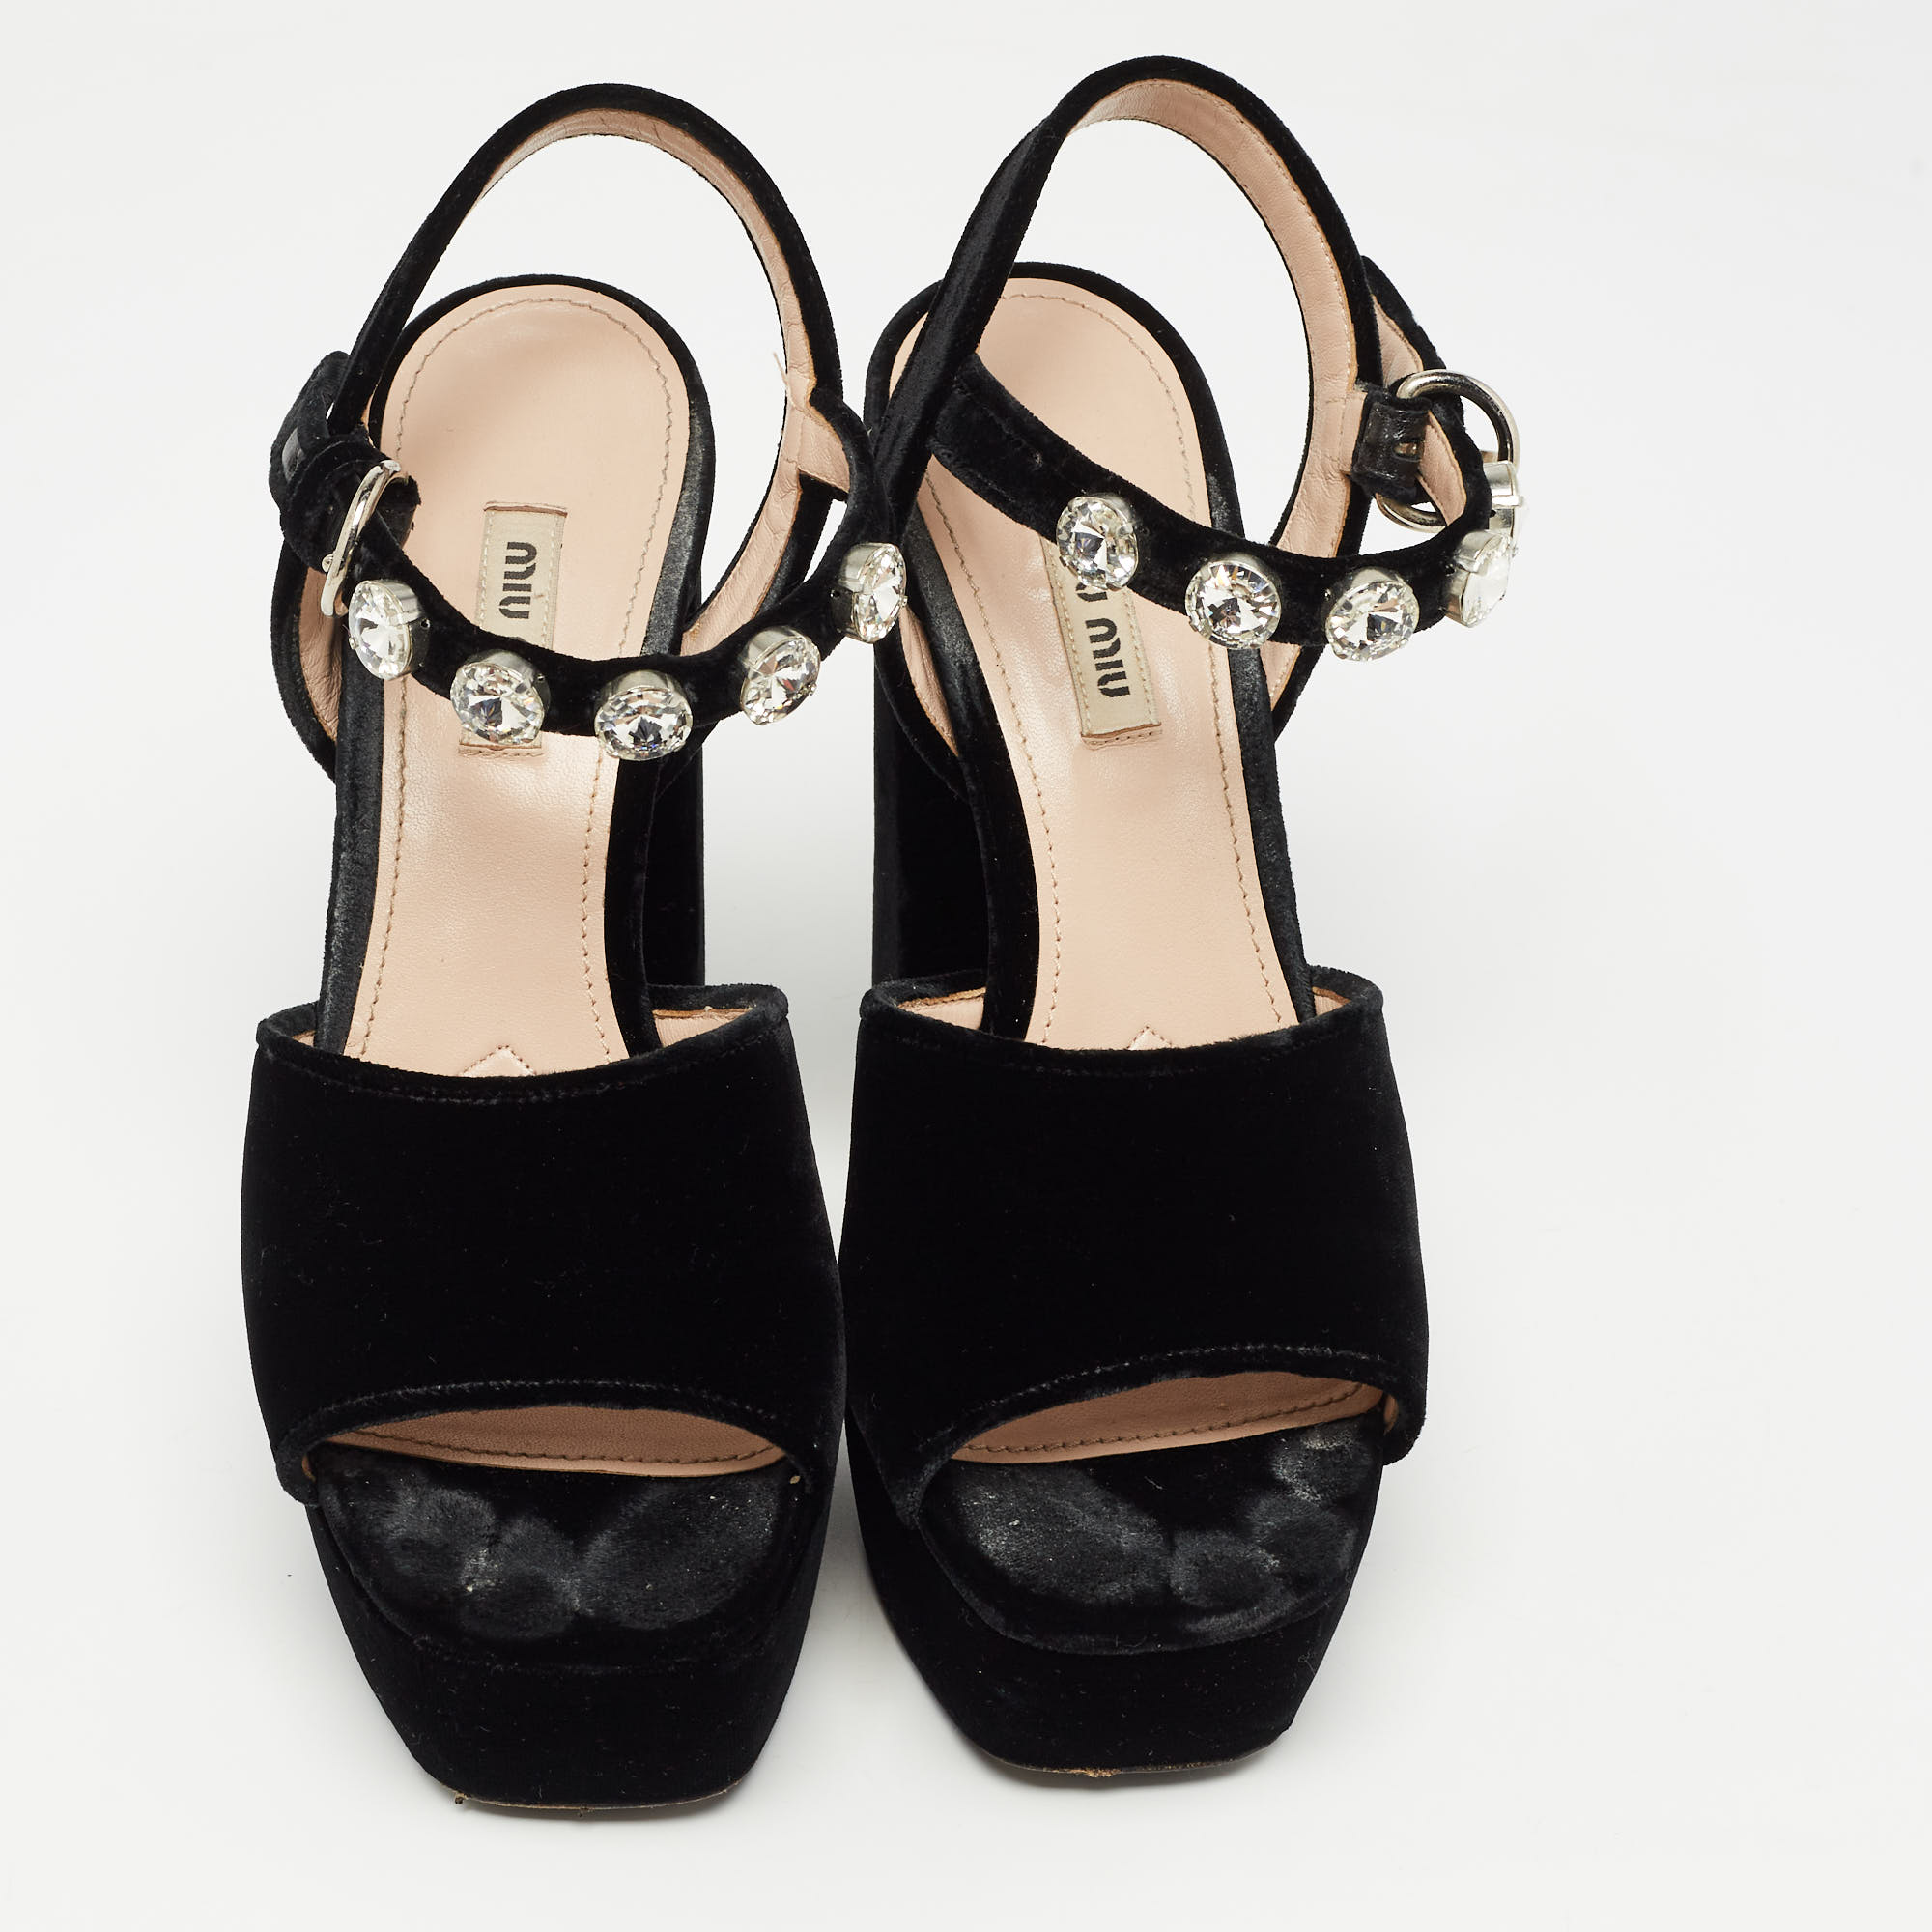 Miu Miu Black Suede Crystal Embellished Heel Ankle Strap Platform Sandals Size 39